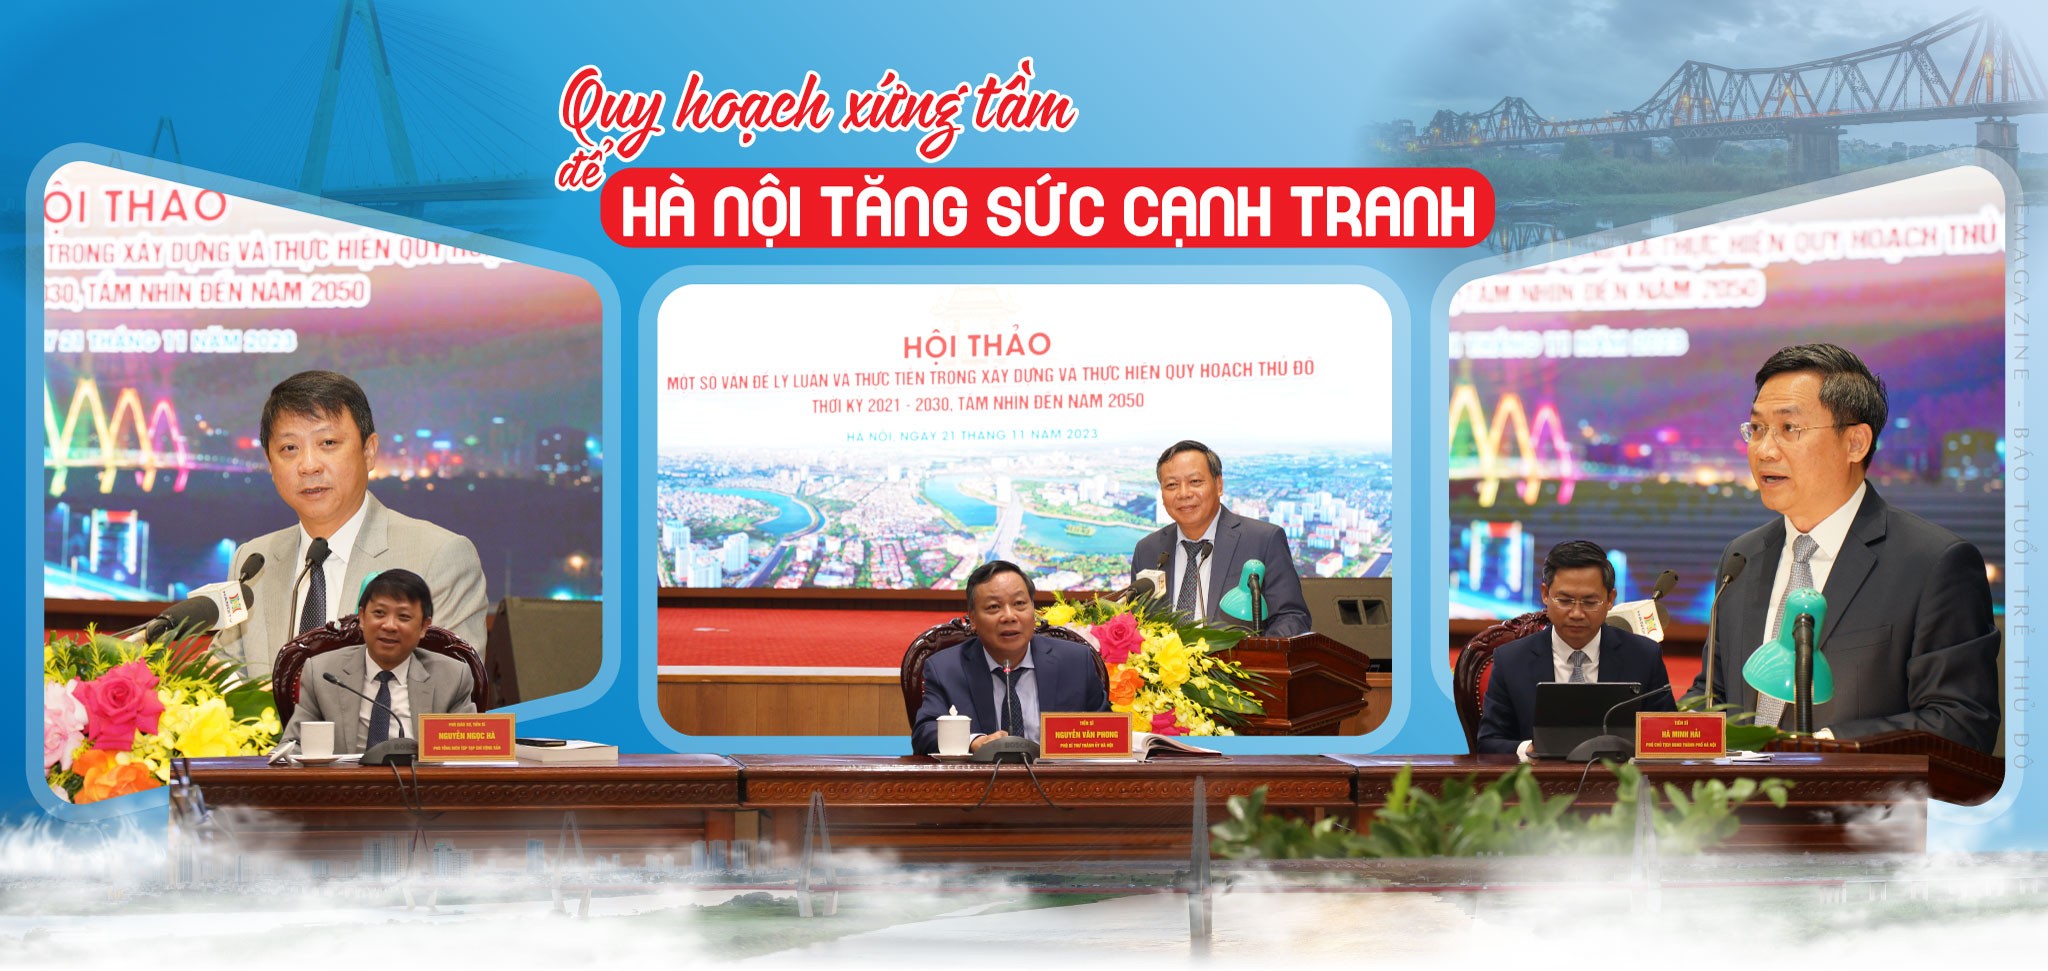 Quy hoạch xứng tầm để Hà Nội tăng sức cạnh tranh